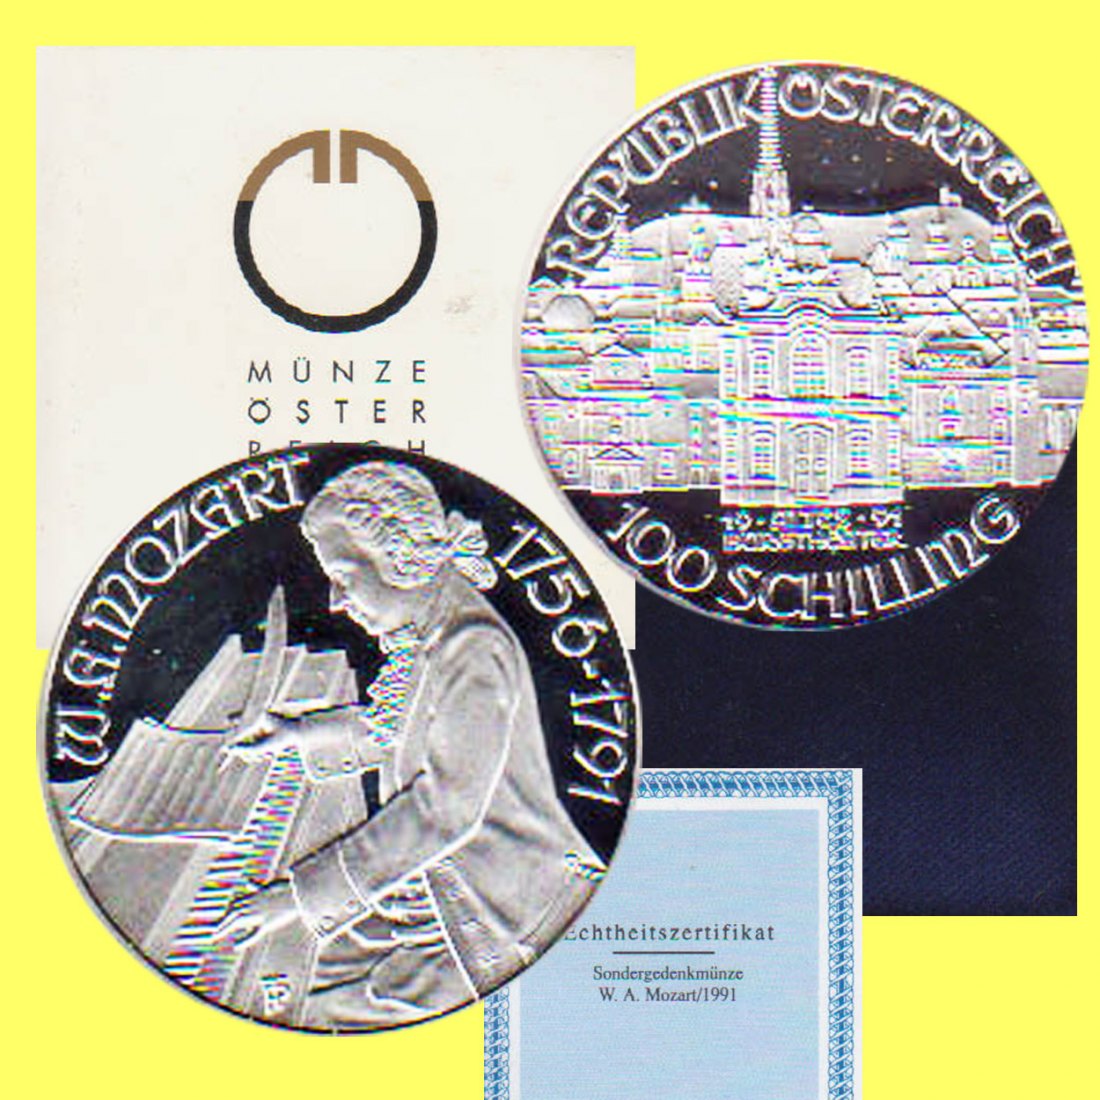  100-öS-Silbermünze Österreich *Mozart - Burgtheater in Wien* 1991 *PP*   